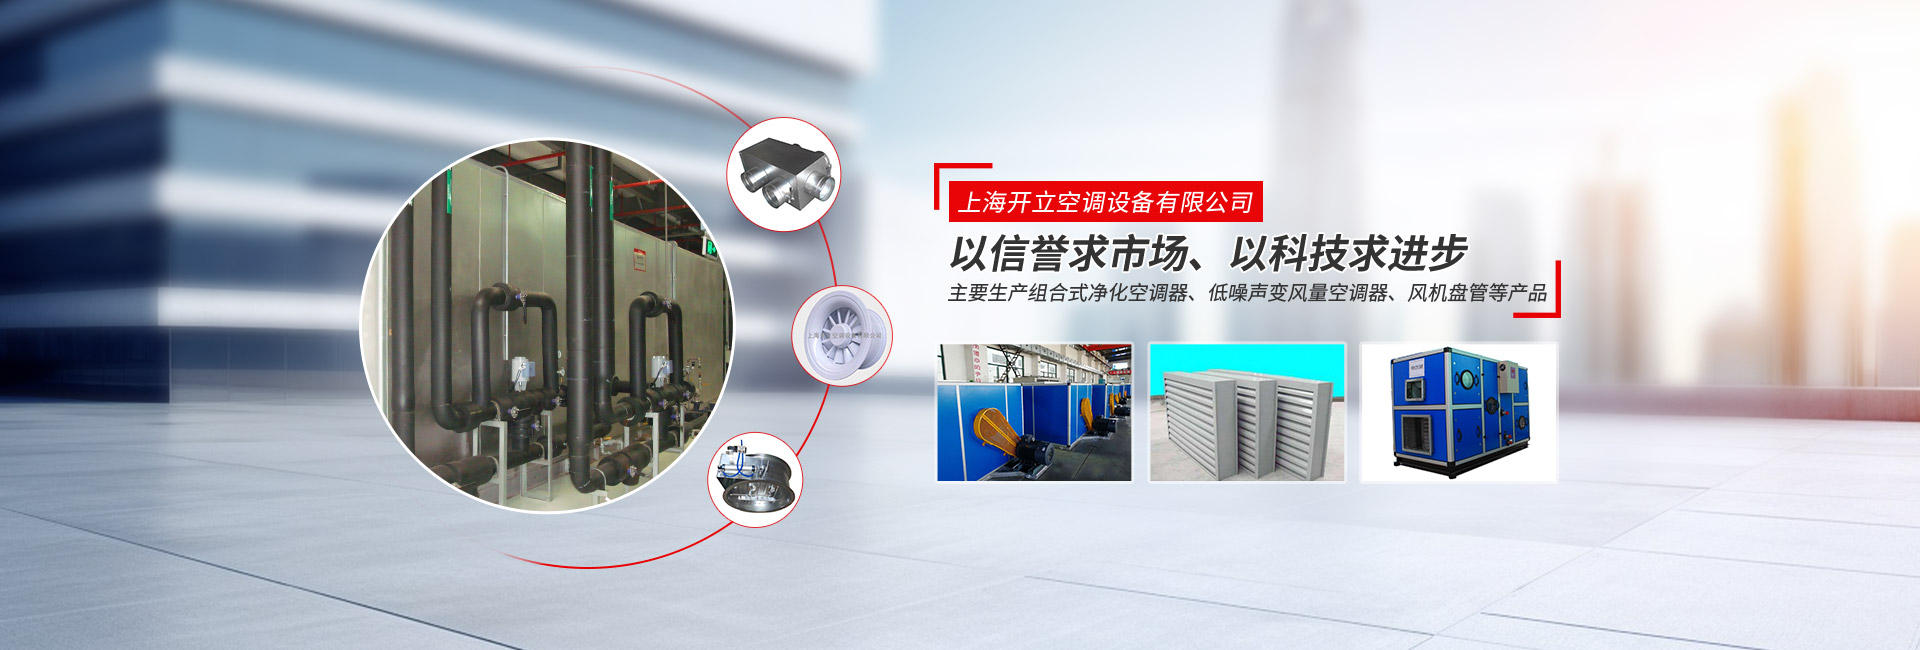 上海555000a公海会员中心空调设备有限公司